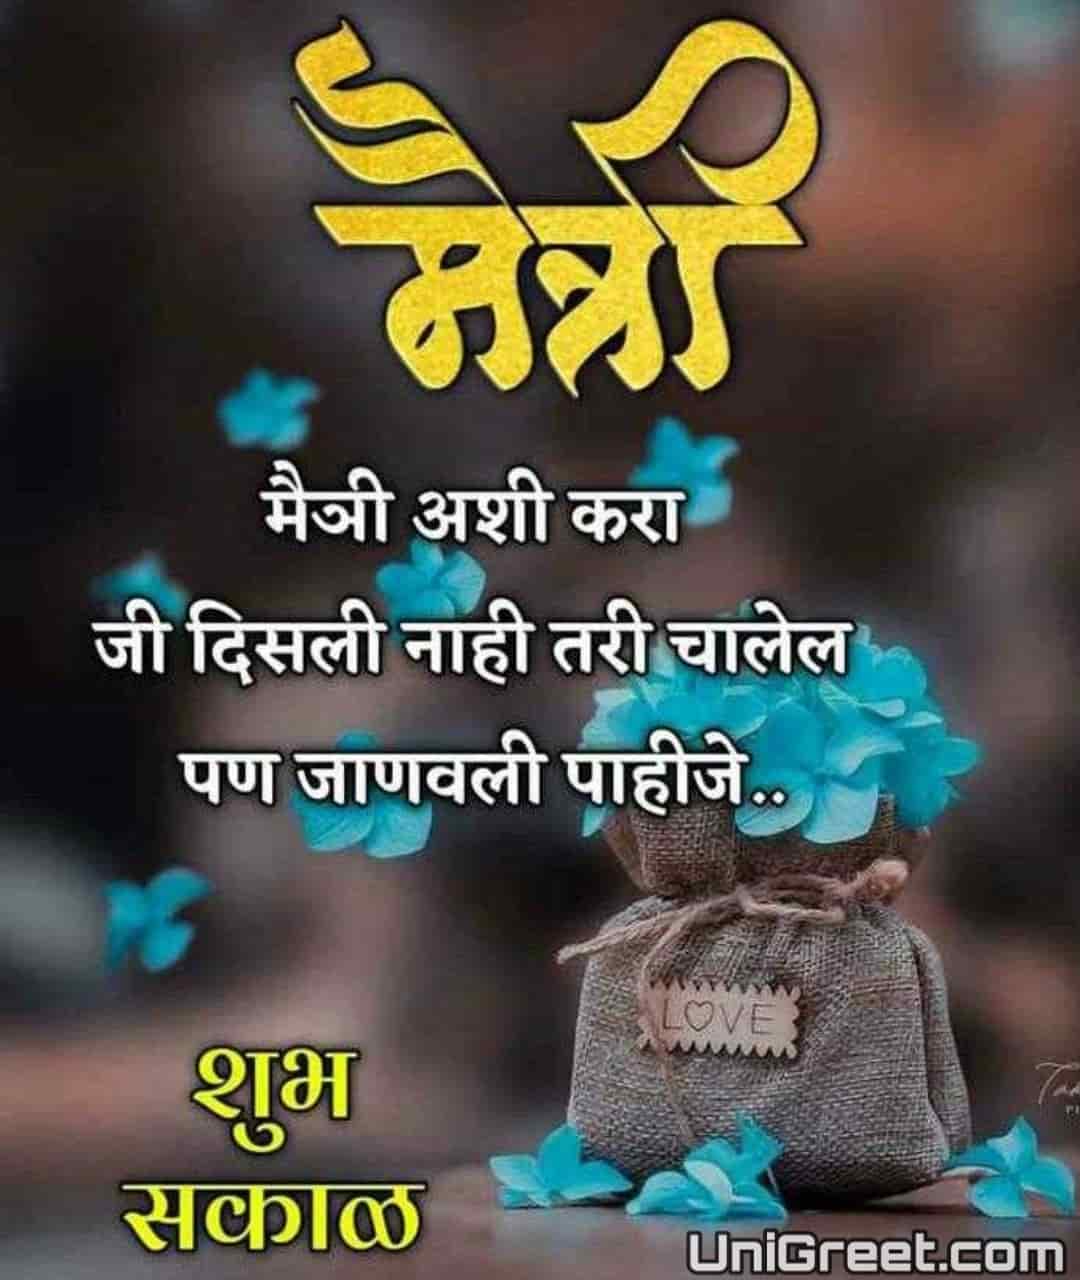 100 à¤¶ à¤­ à¤¸à¤ à¤³ à¤®à¤° à¤  à¤¶ à¤­ à¤ à¤ Good Morning Wishes Images Quotes Status In Marathi For Whatsapp Good morning images, quotes, status, suvichar in marathi. good morning wishes images quotes